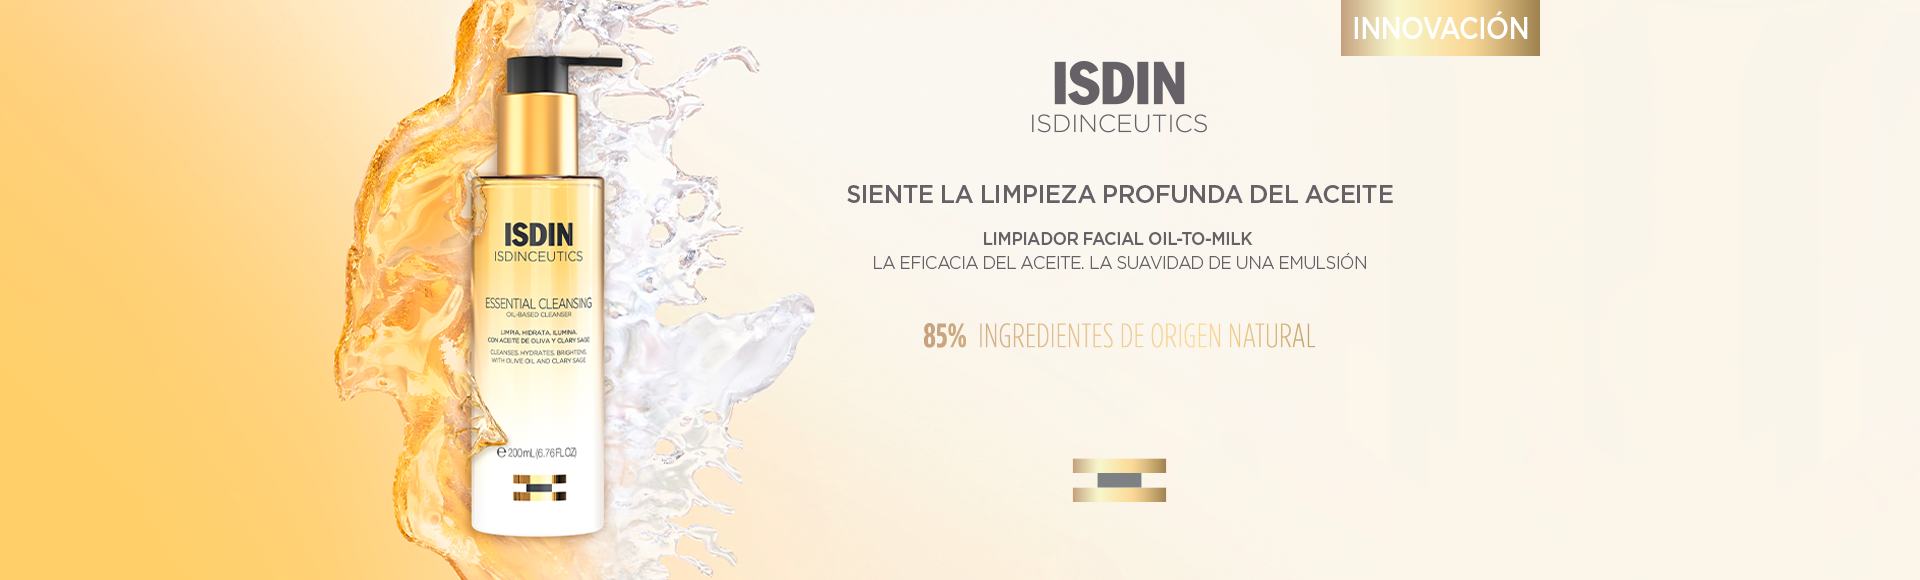 Pongo en acción el Essential Cleansing de @isdin - #isdinlovers #cuida